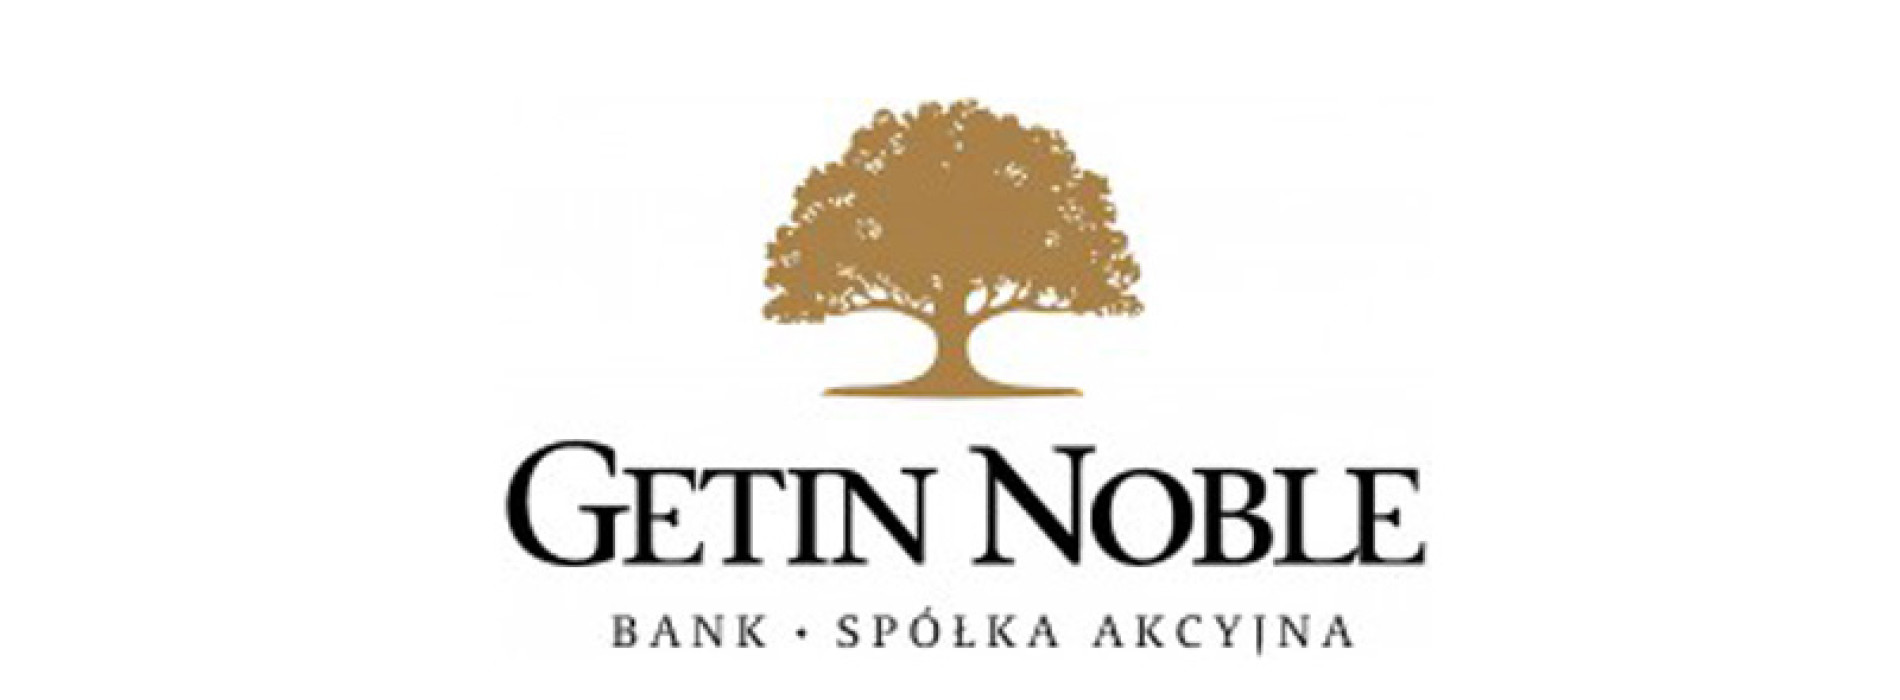 Getin Noble Bank współfinansuje Medyczne Centrum Przetwarzania Danych